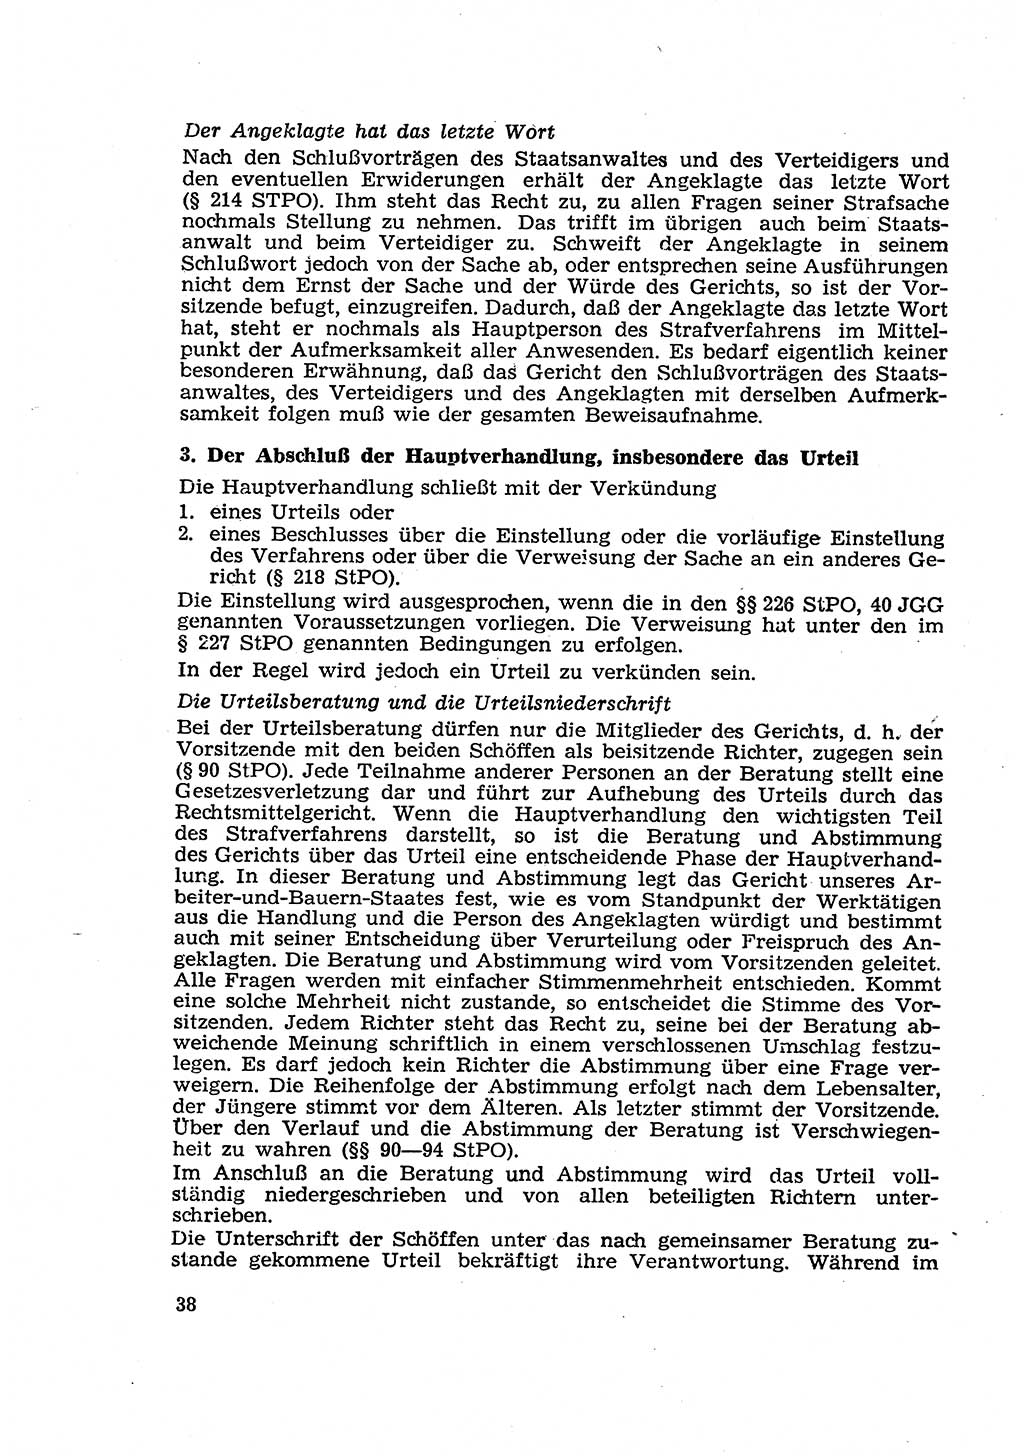 Strafverfahren in der Deutschen Demokratischen Republik (DDR) und seine demokratischen Prinzipien 1956, Seite 38 (Str.-Verf. DDR 1956, S. 38)